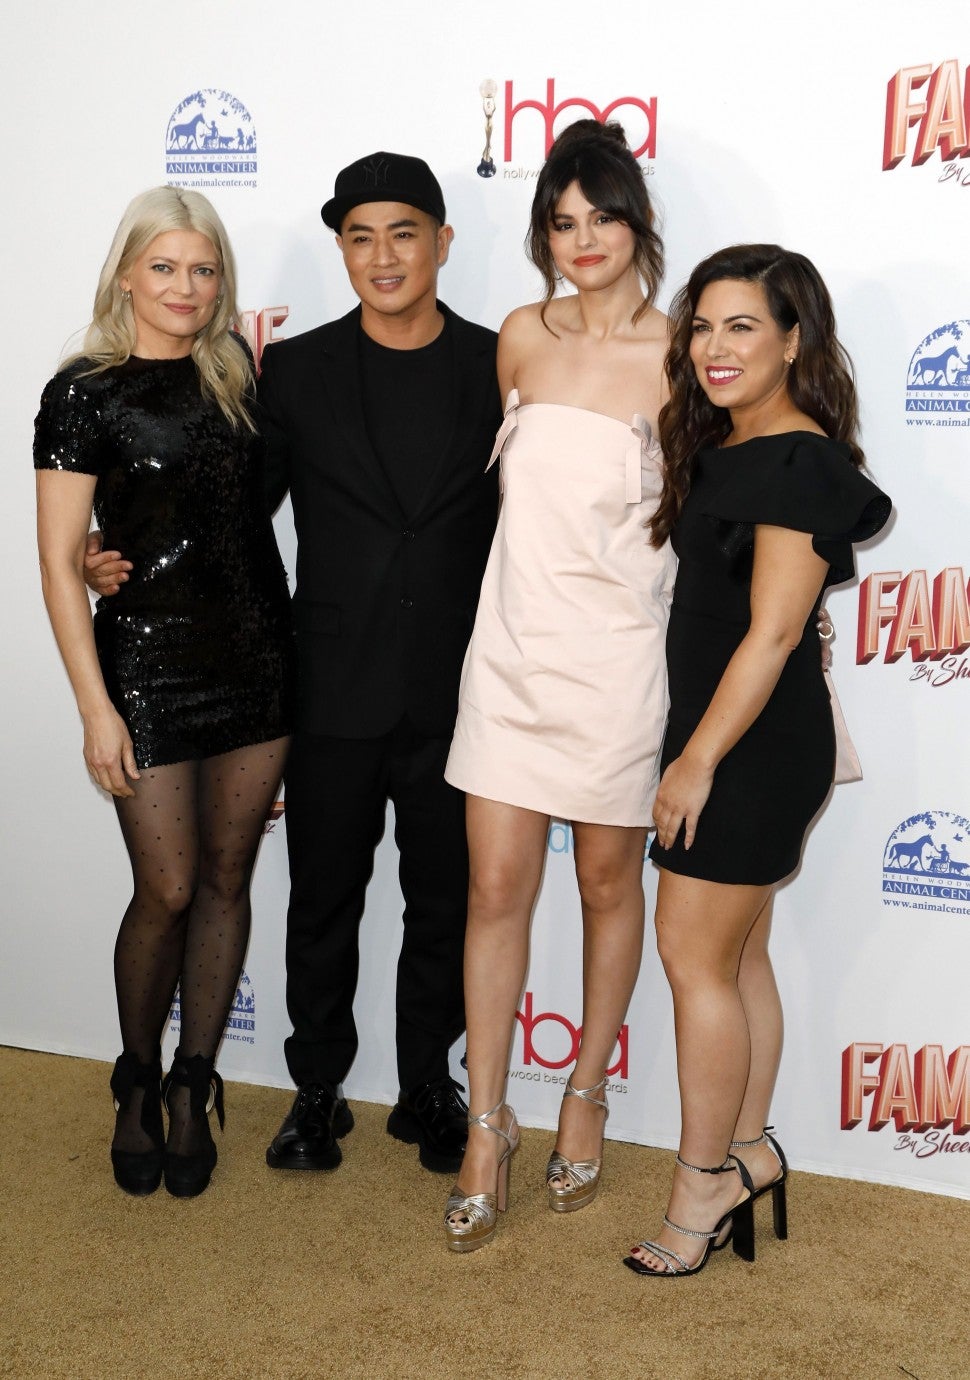 Kate Young, Hung Vanngo, Selena Gomez and Marissa Marino